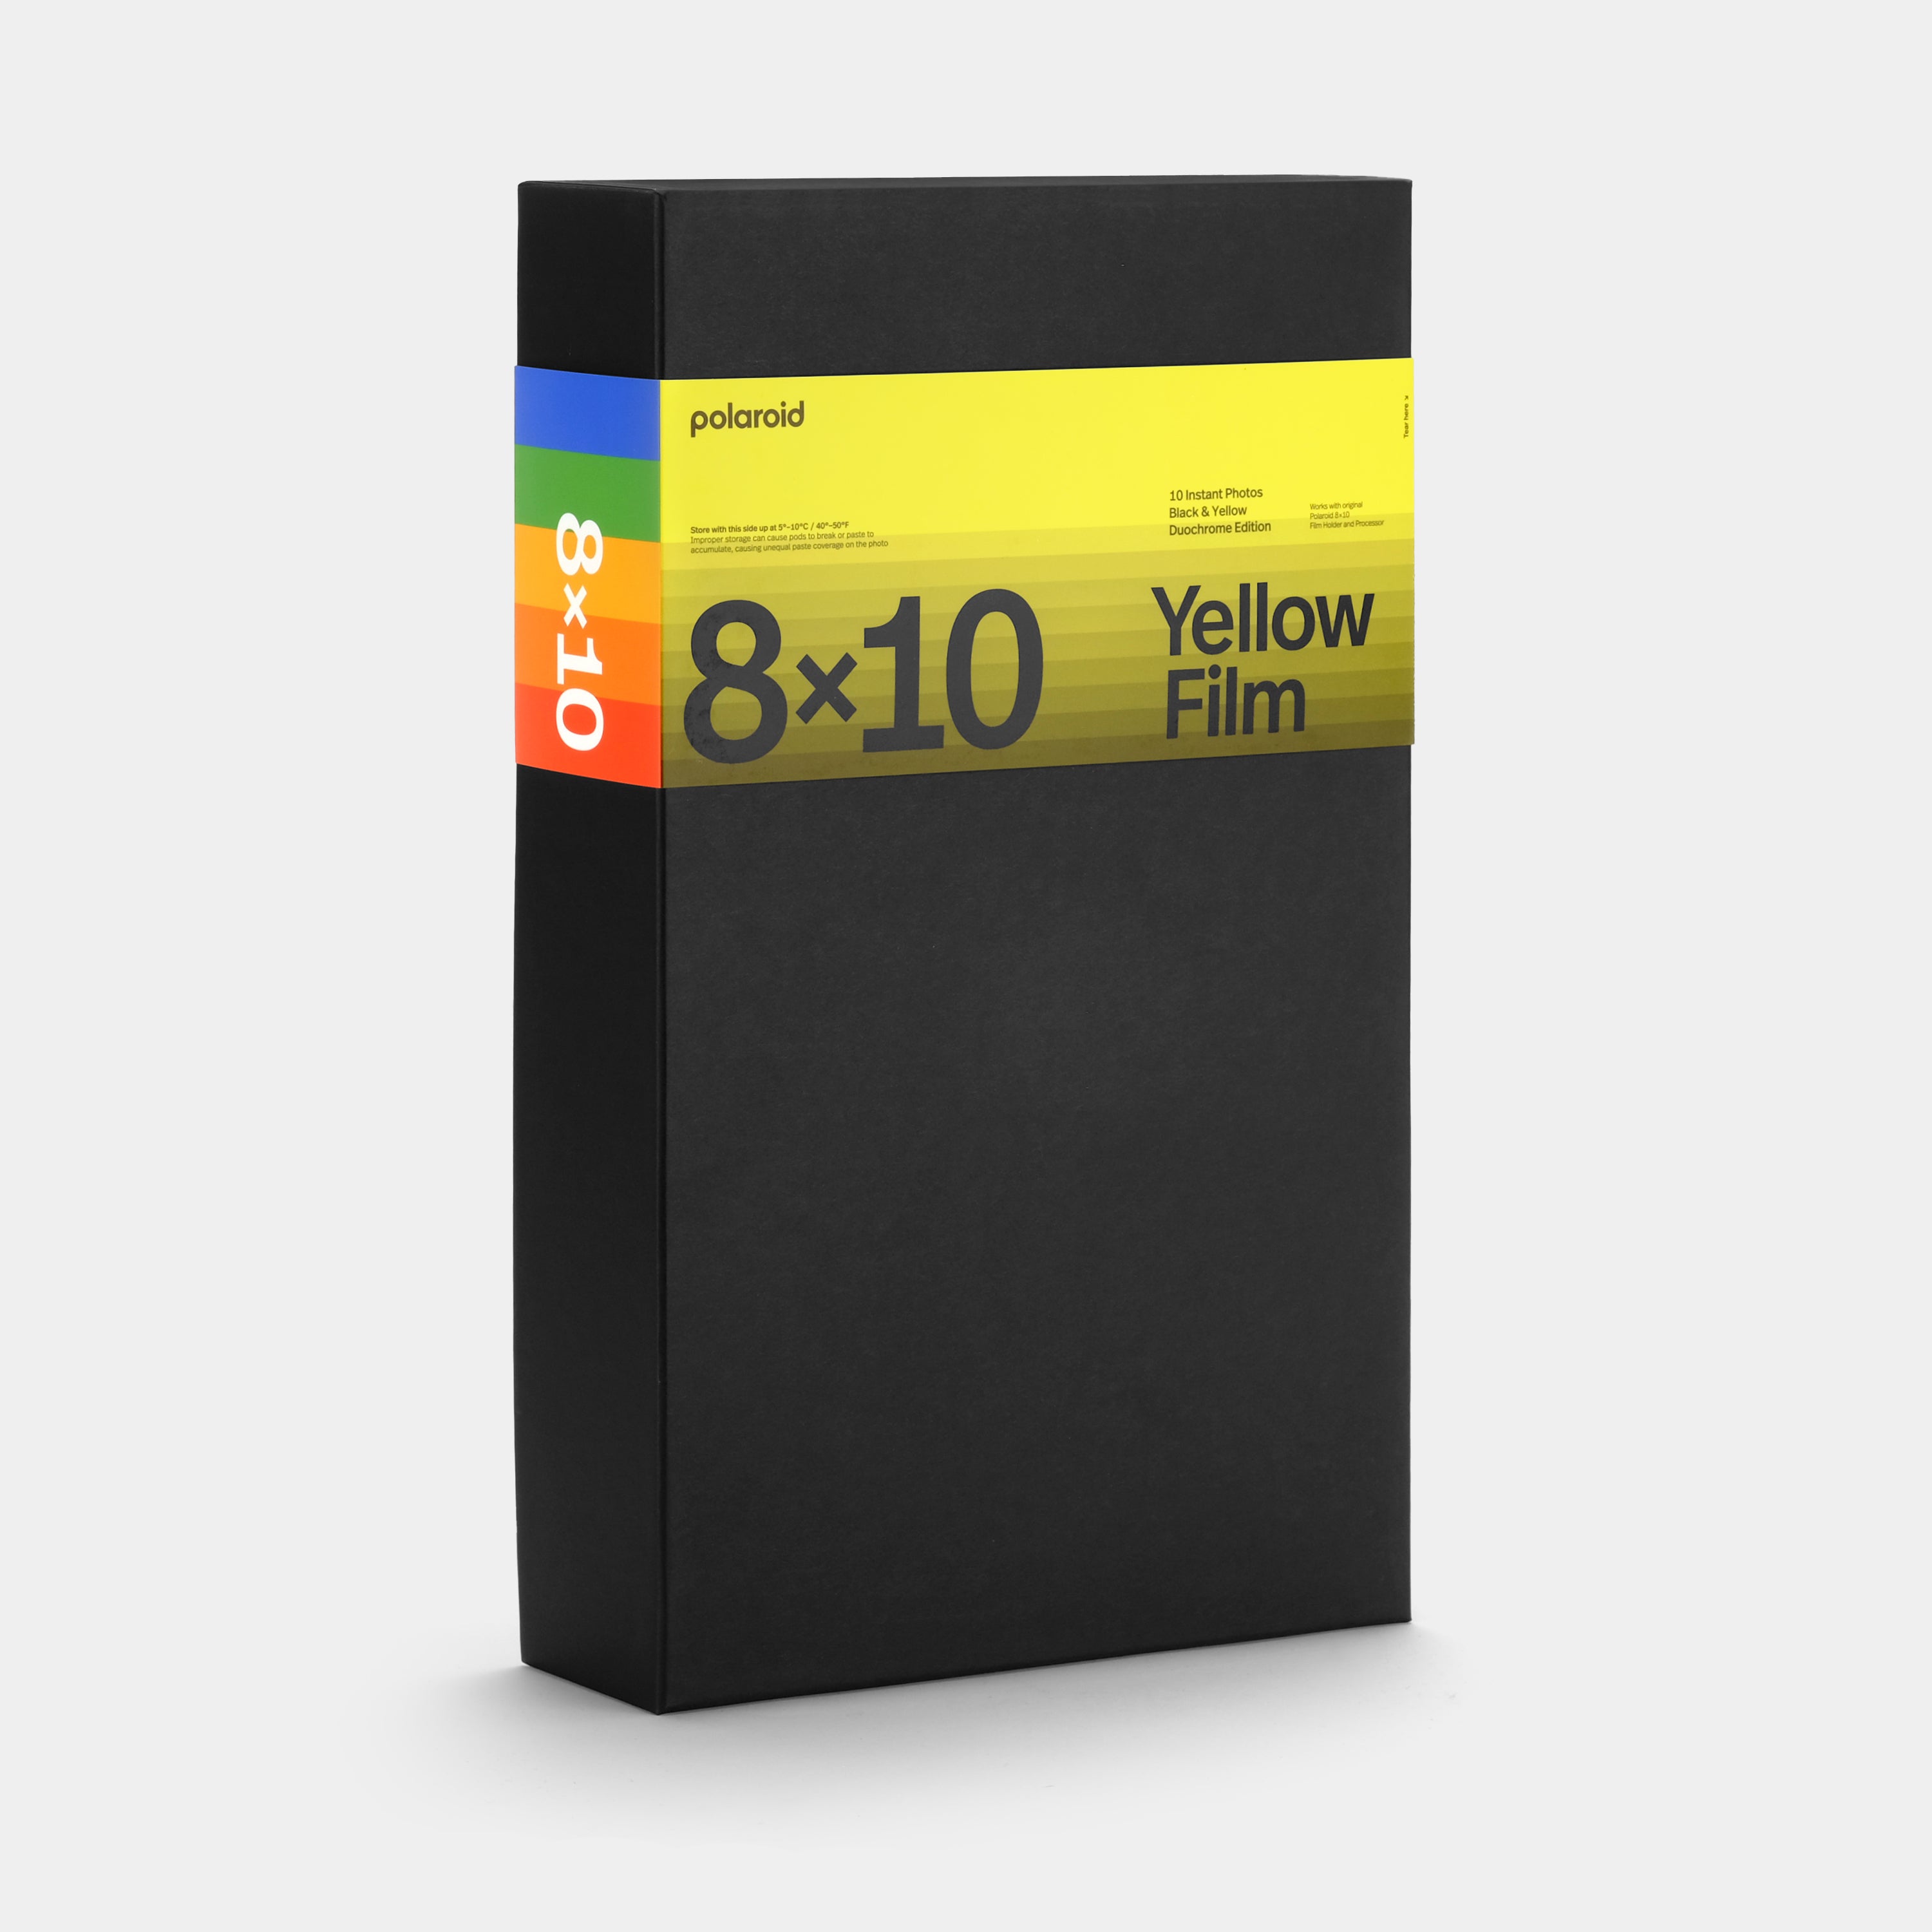 Expired Polaroid Duochrome Film for 8 x 10 - Black & Yellow Edition